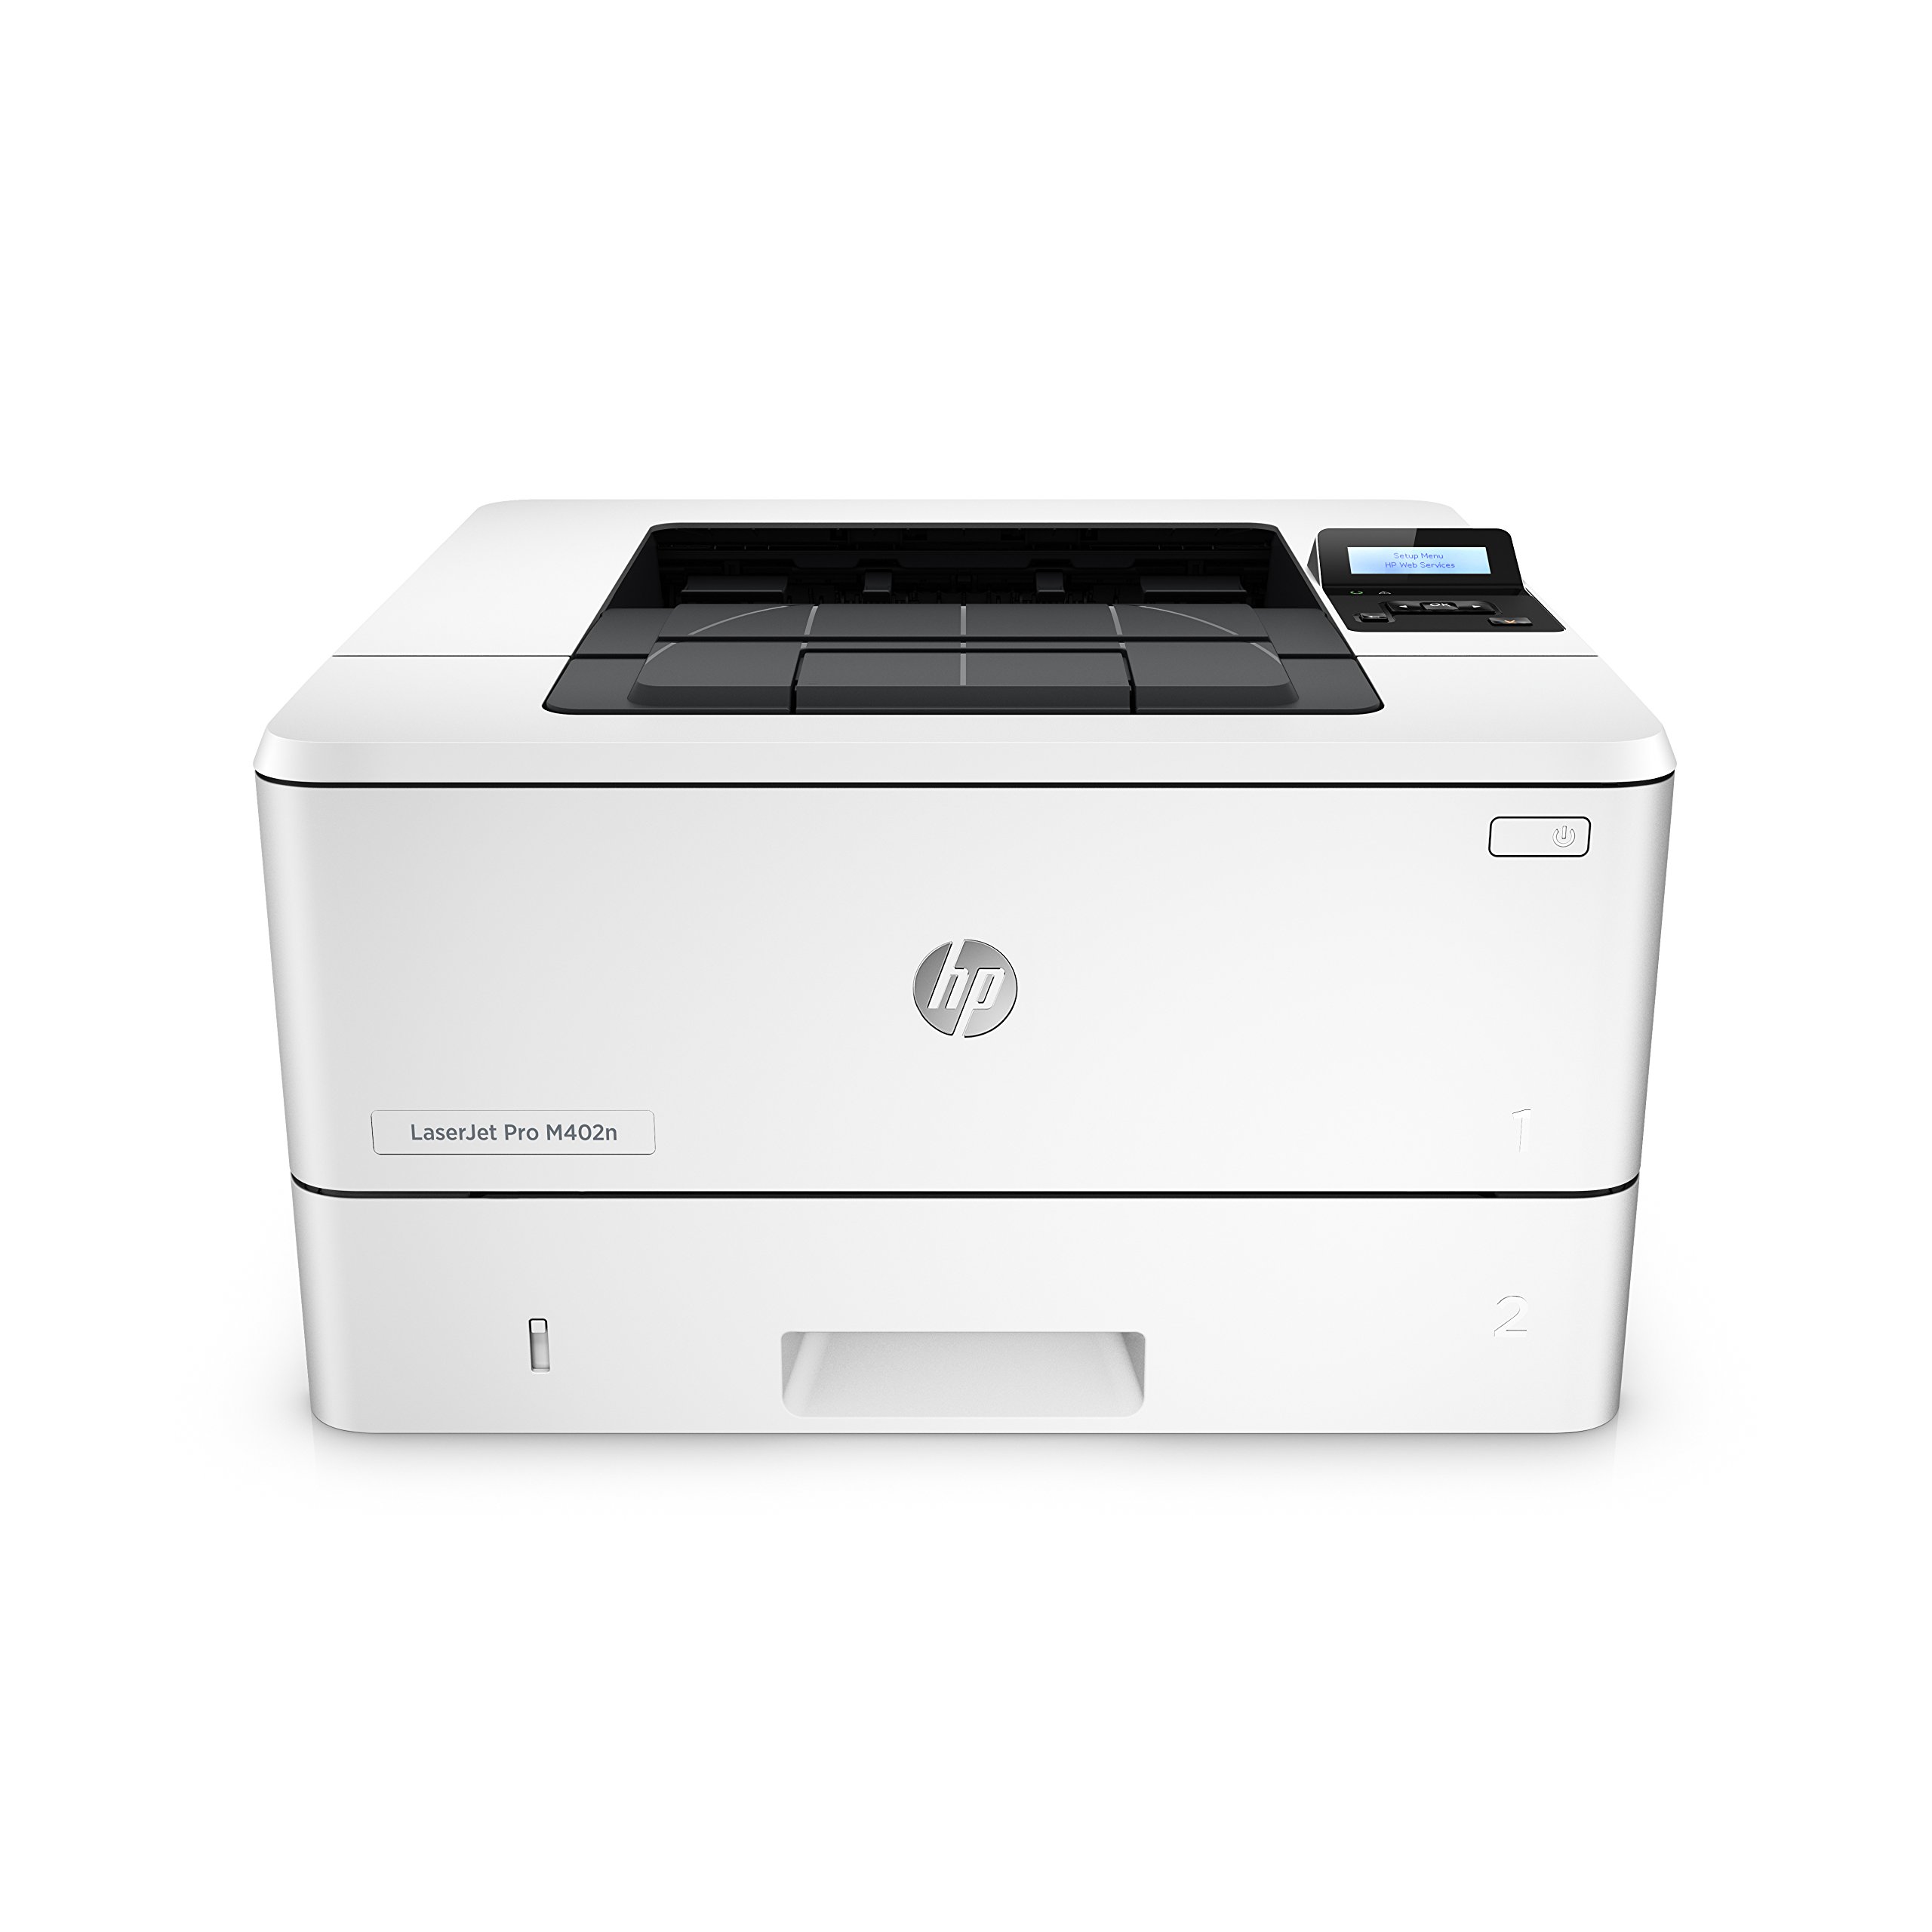 HP LaserJet Pro M402n Monochrome Laser Printer